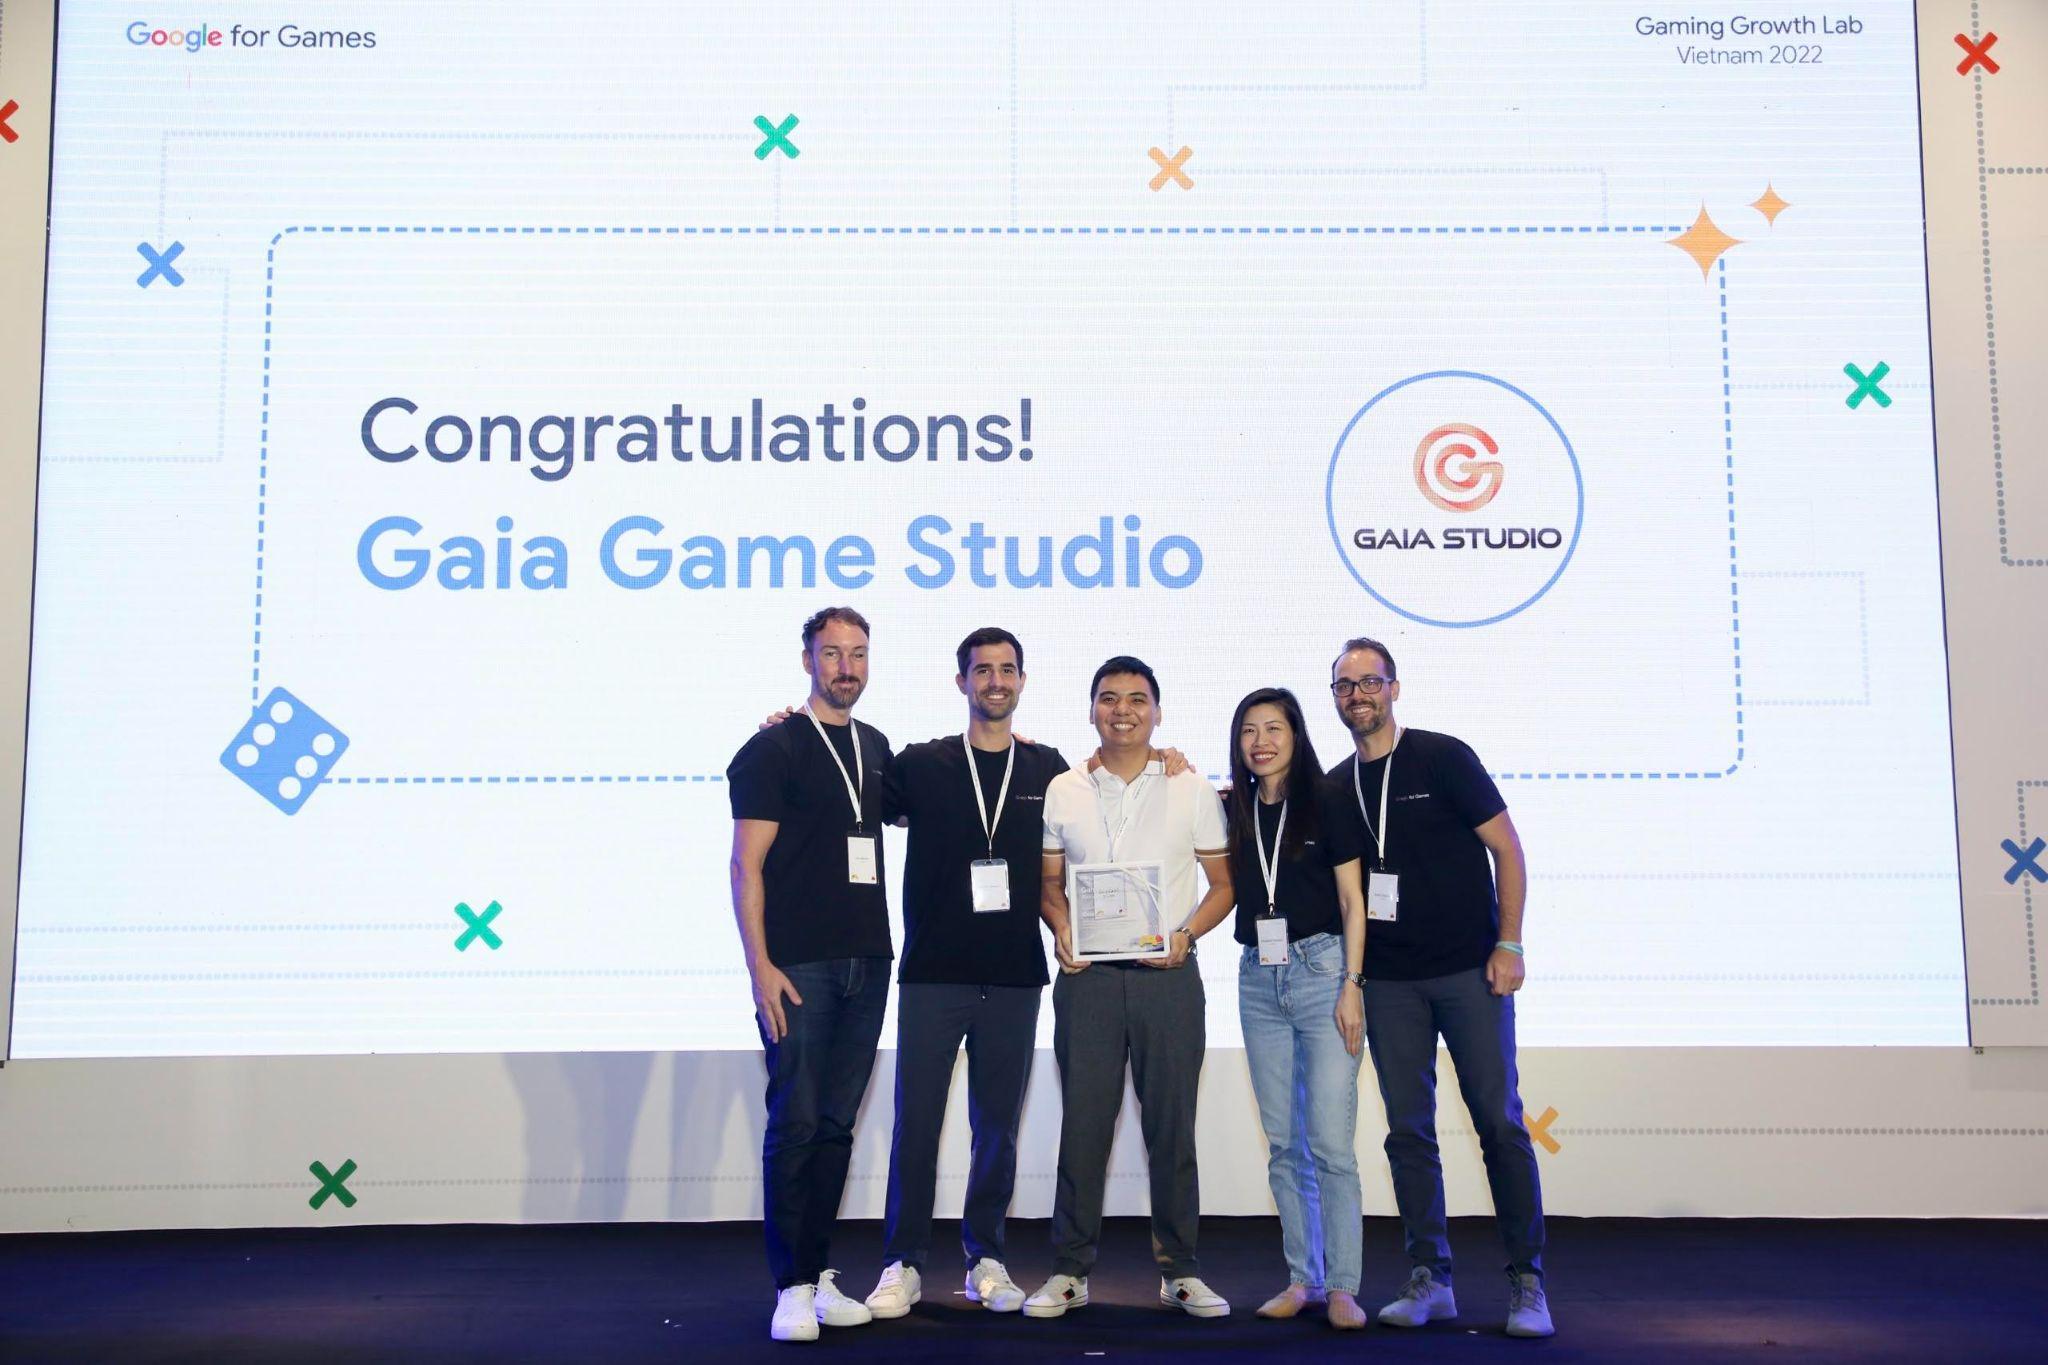 53 studio game tại Việt Nam tốt nghiệp Chương trình Google Gaming Growth Lab 2022